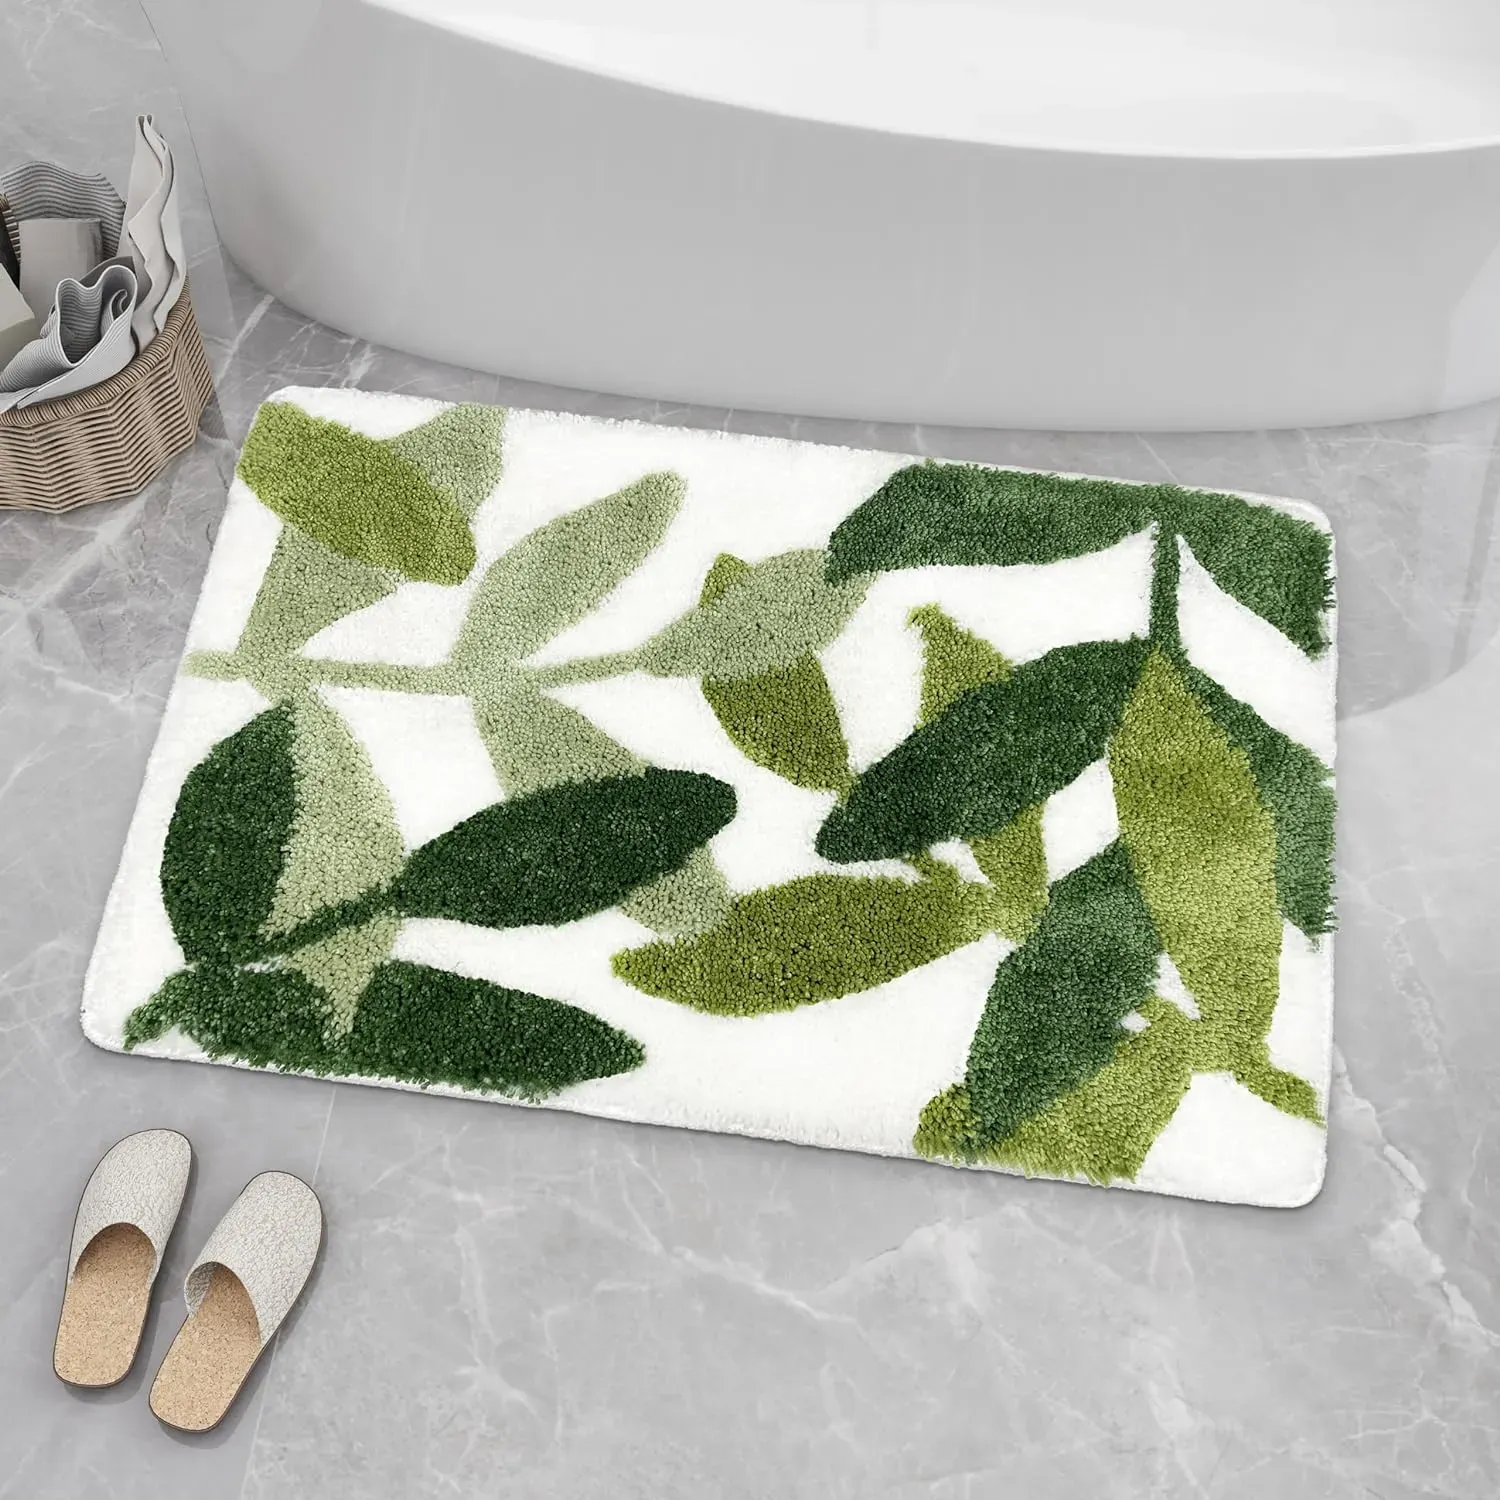 Коврики коврики для ванной комнаты 31,5 х 19,5 дюйма для ванны коврик зеленые листья микроволокна Сильная вода абсорбирующая без скольжения Симпатичный коврик для ванной